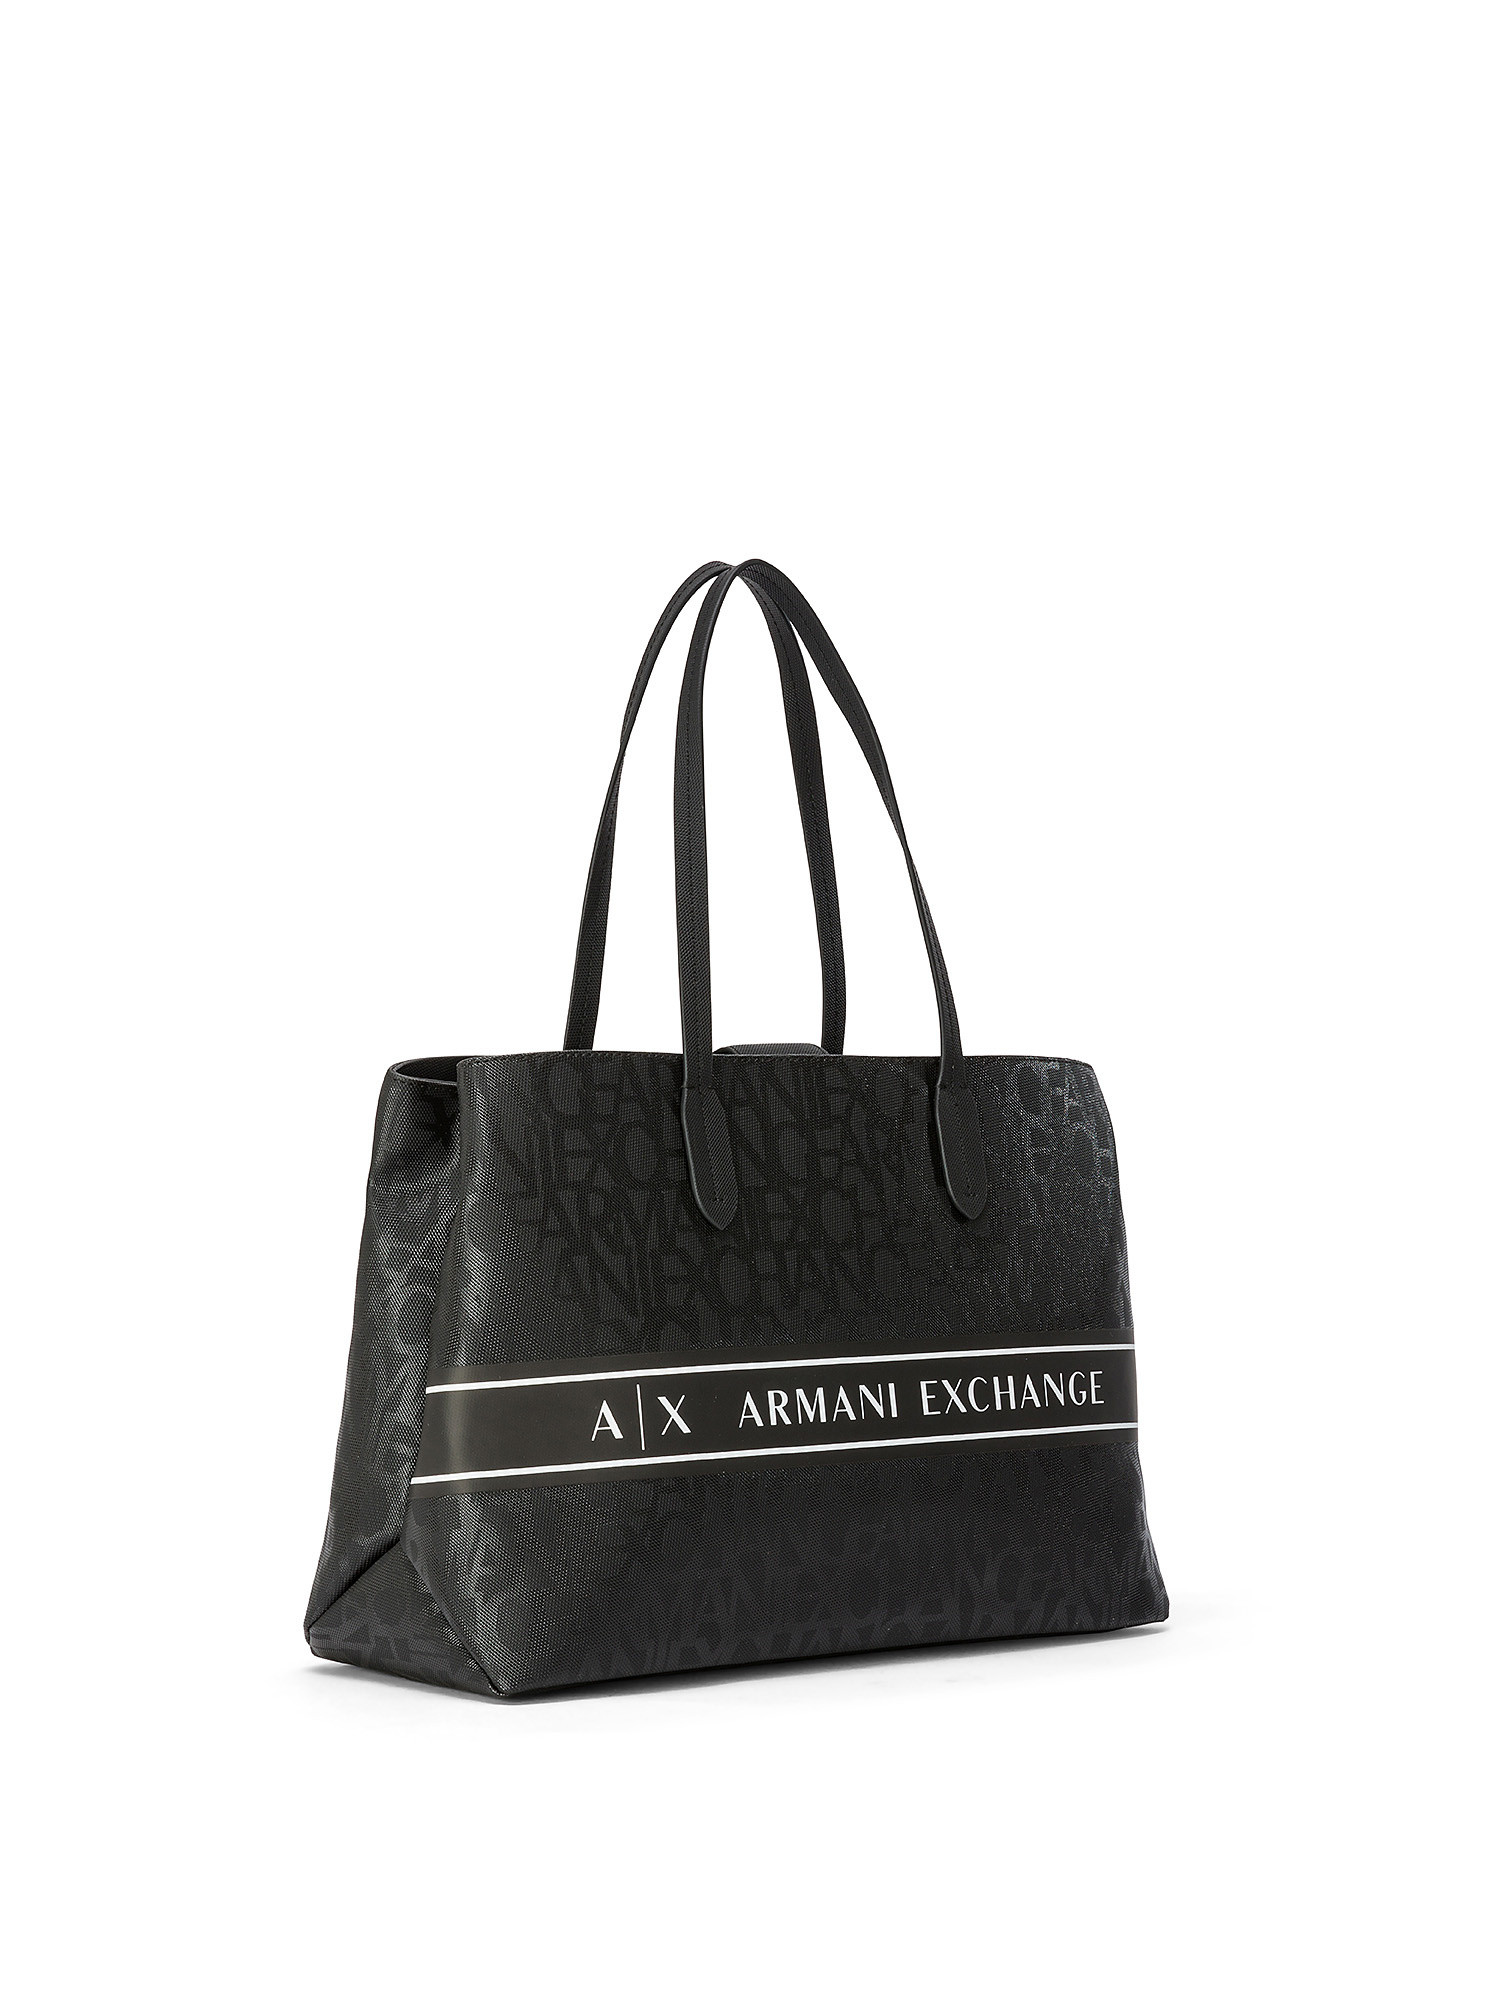 Armani Exchange - Shopper bag with all-over logo, Black, large image number 1